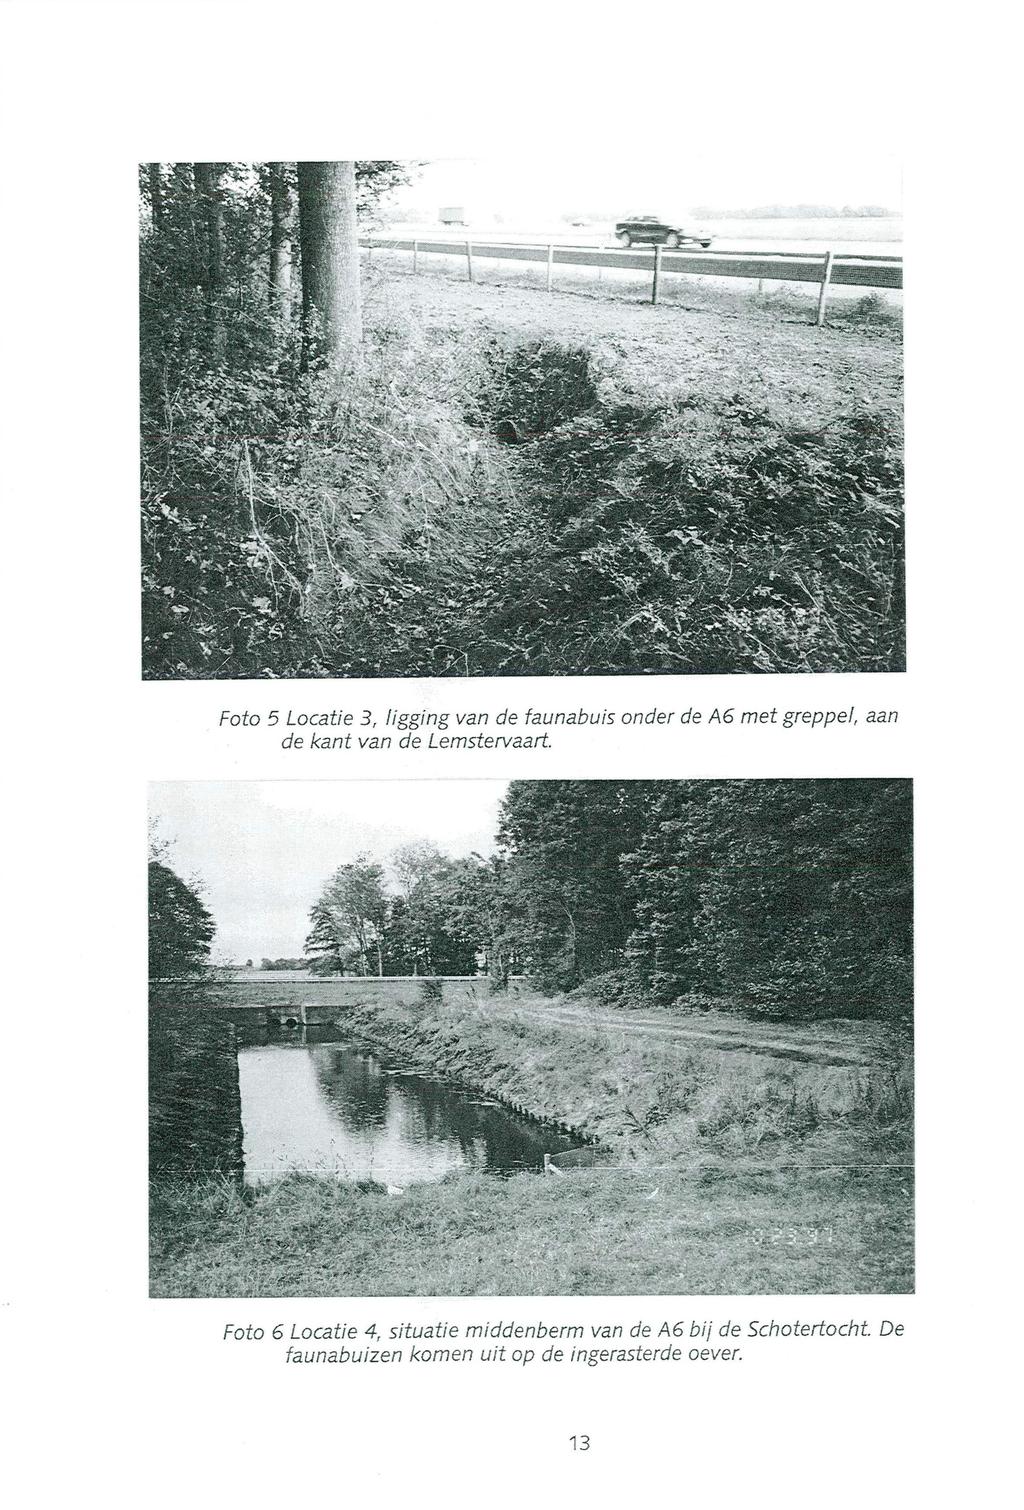 SM.4... Foto 5 Locatie 3, ligging van de faunabuis onder de A6 met greppel, aan de kant van de Lemstervaart.